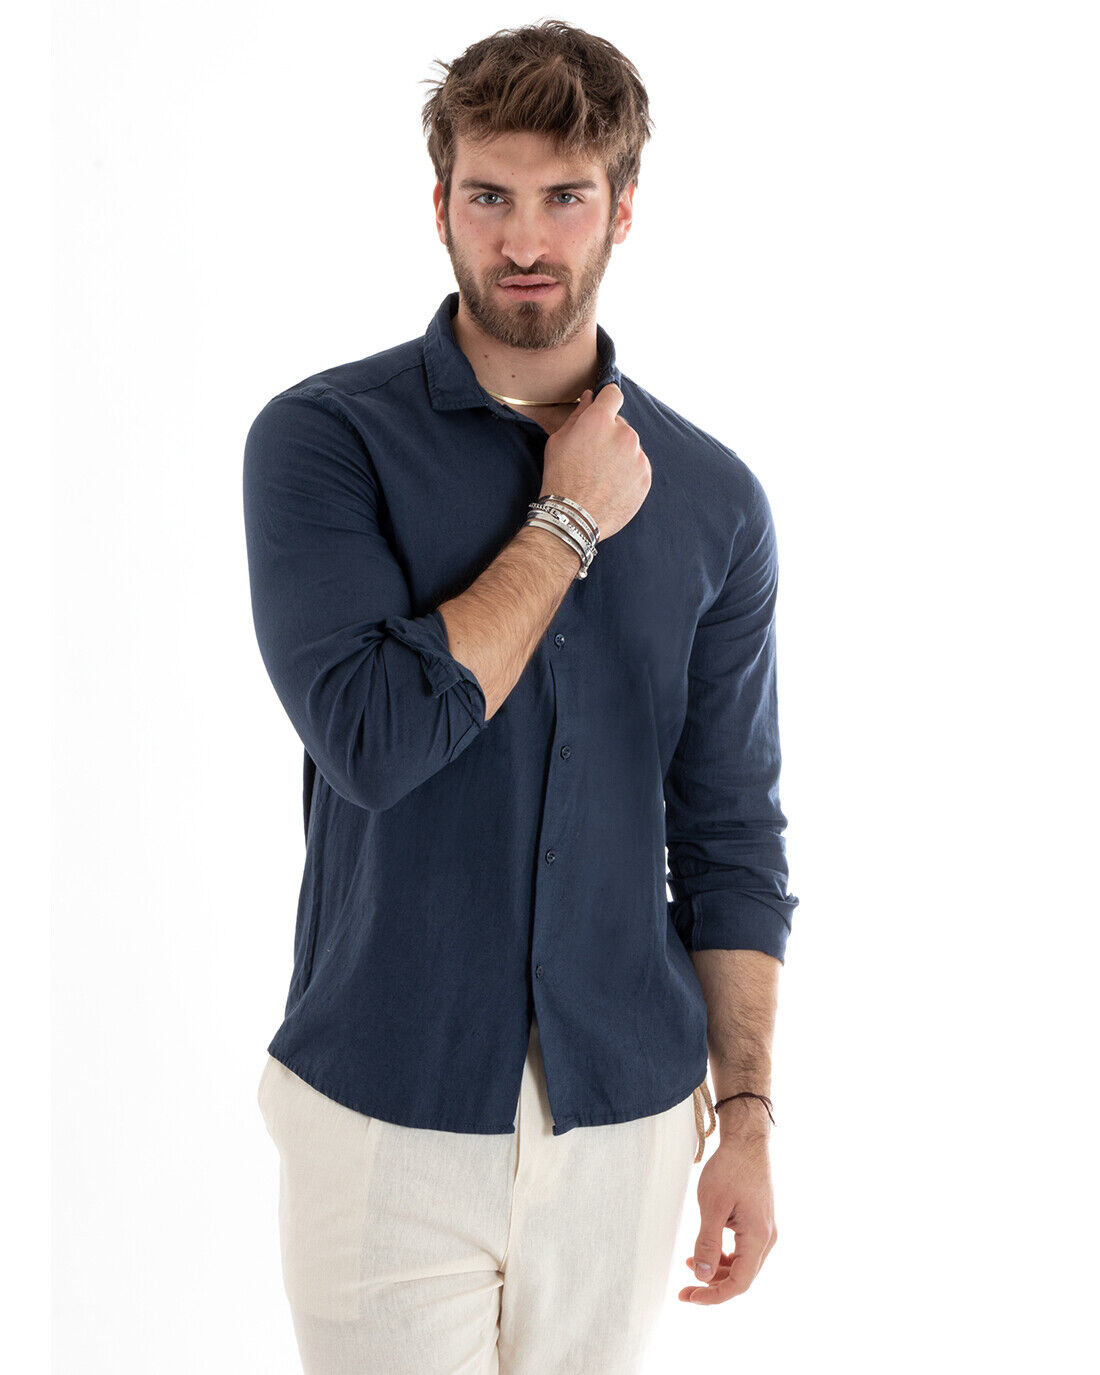 Camicia Uomo Con Colletto Tinta Unita Blu Lino Manica Lunga Casual Sartoriale GIOSAL-C2712A